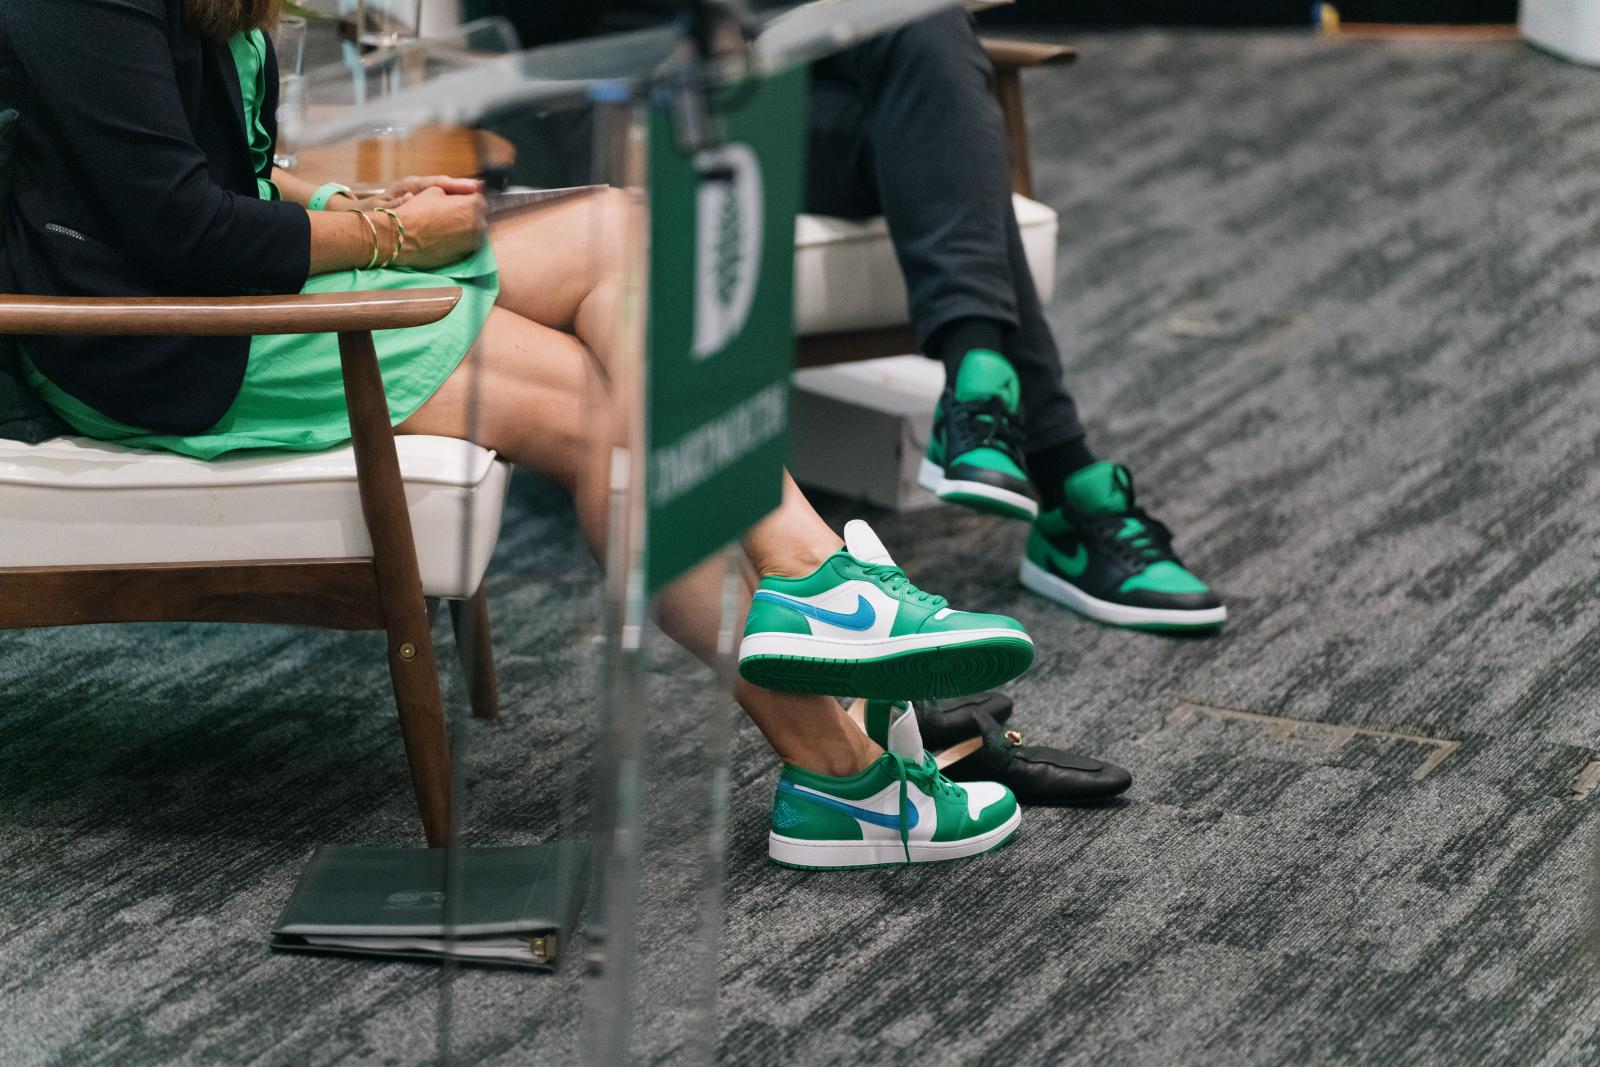 Green and white Nike Jordans on President Beilock's feet